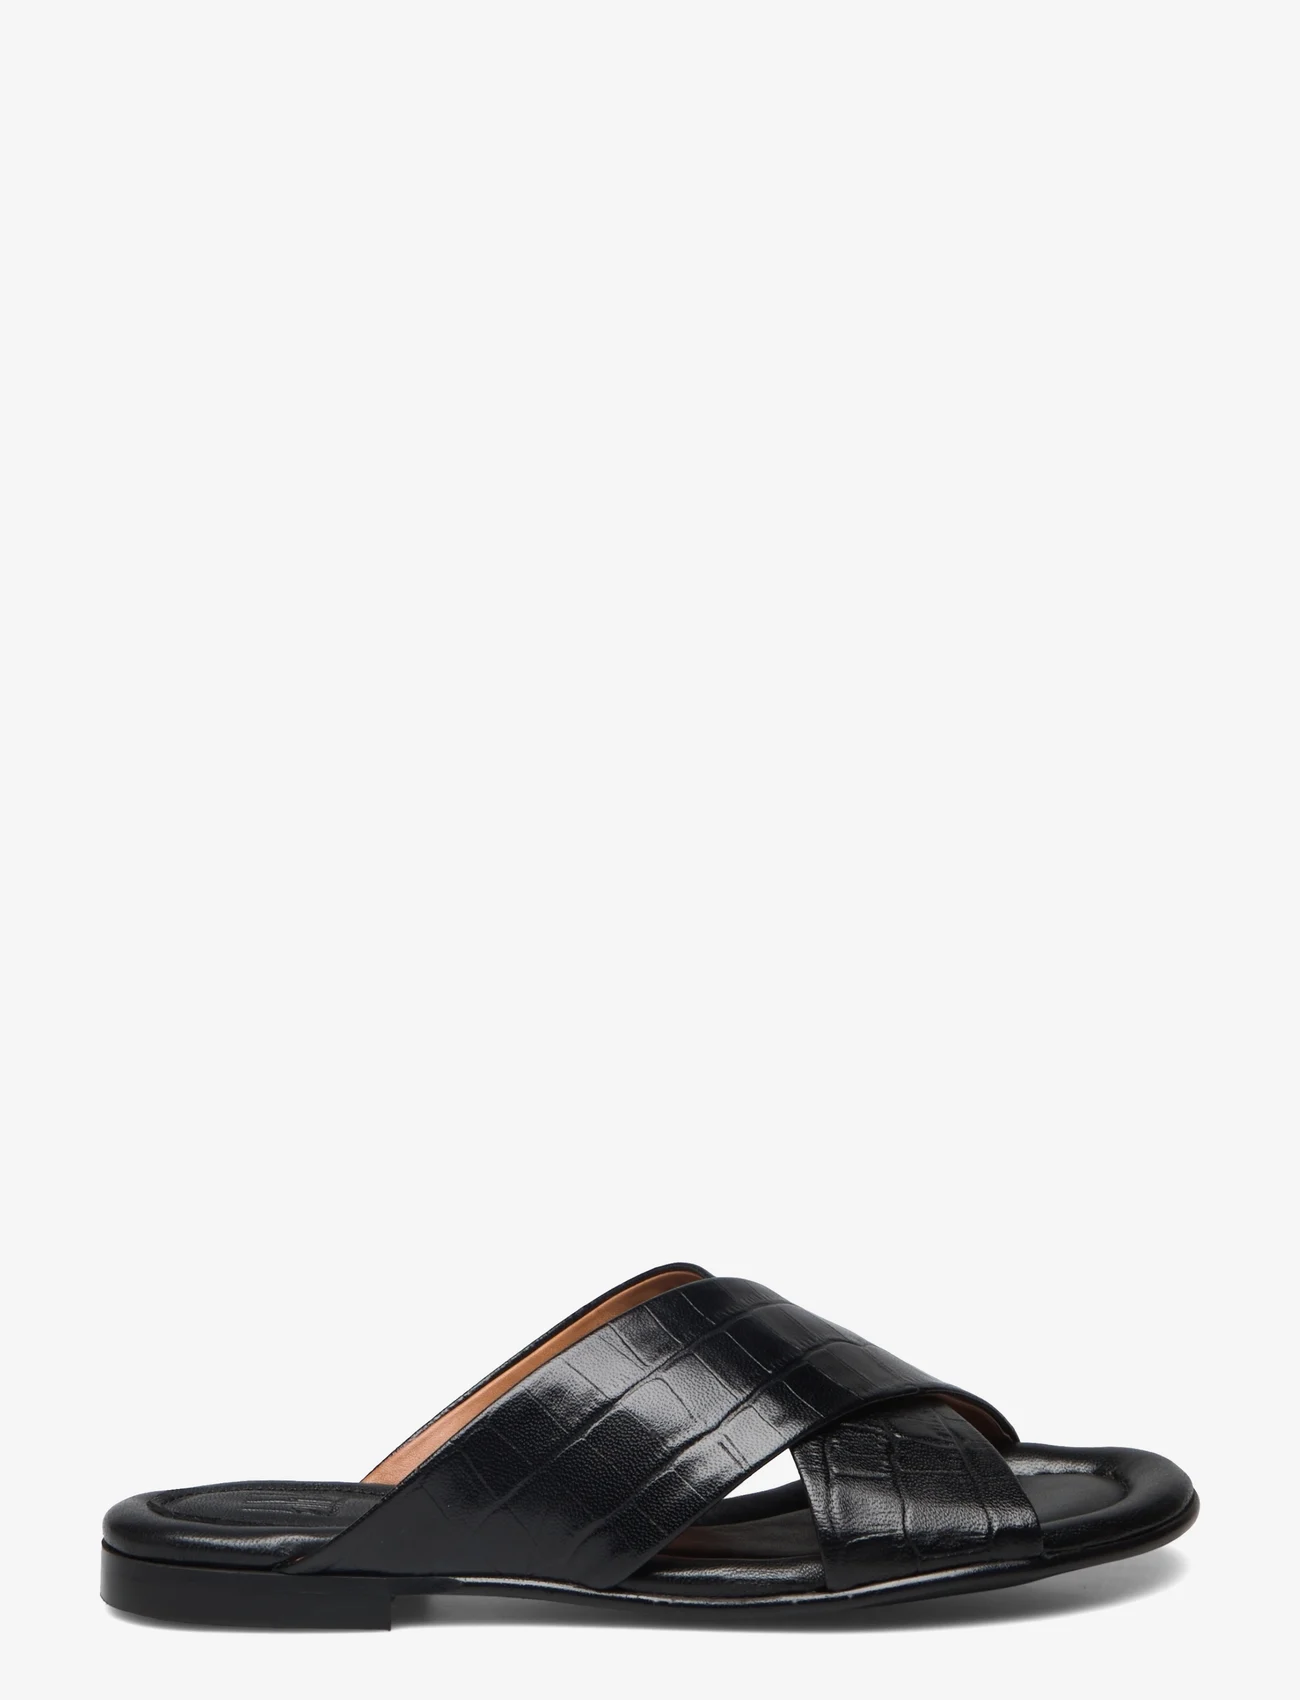 Billi Bi - Sandals - flat sandals - black croco 20 - 1